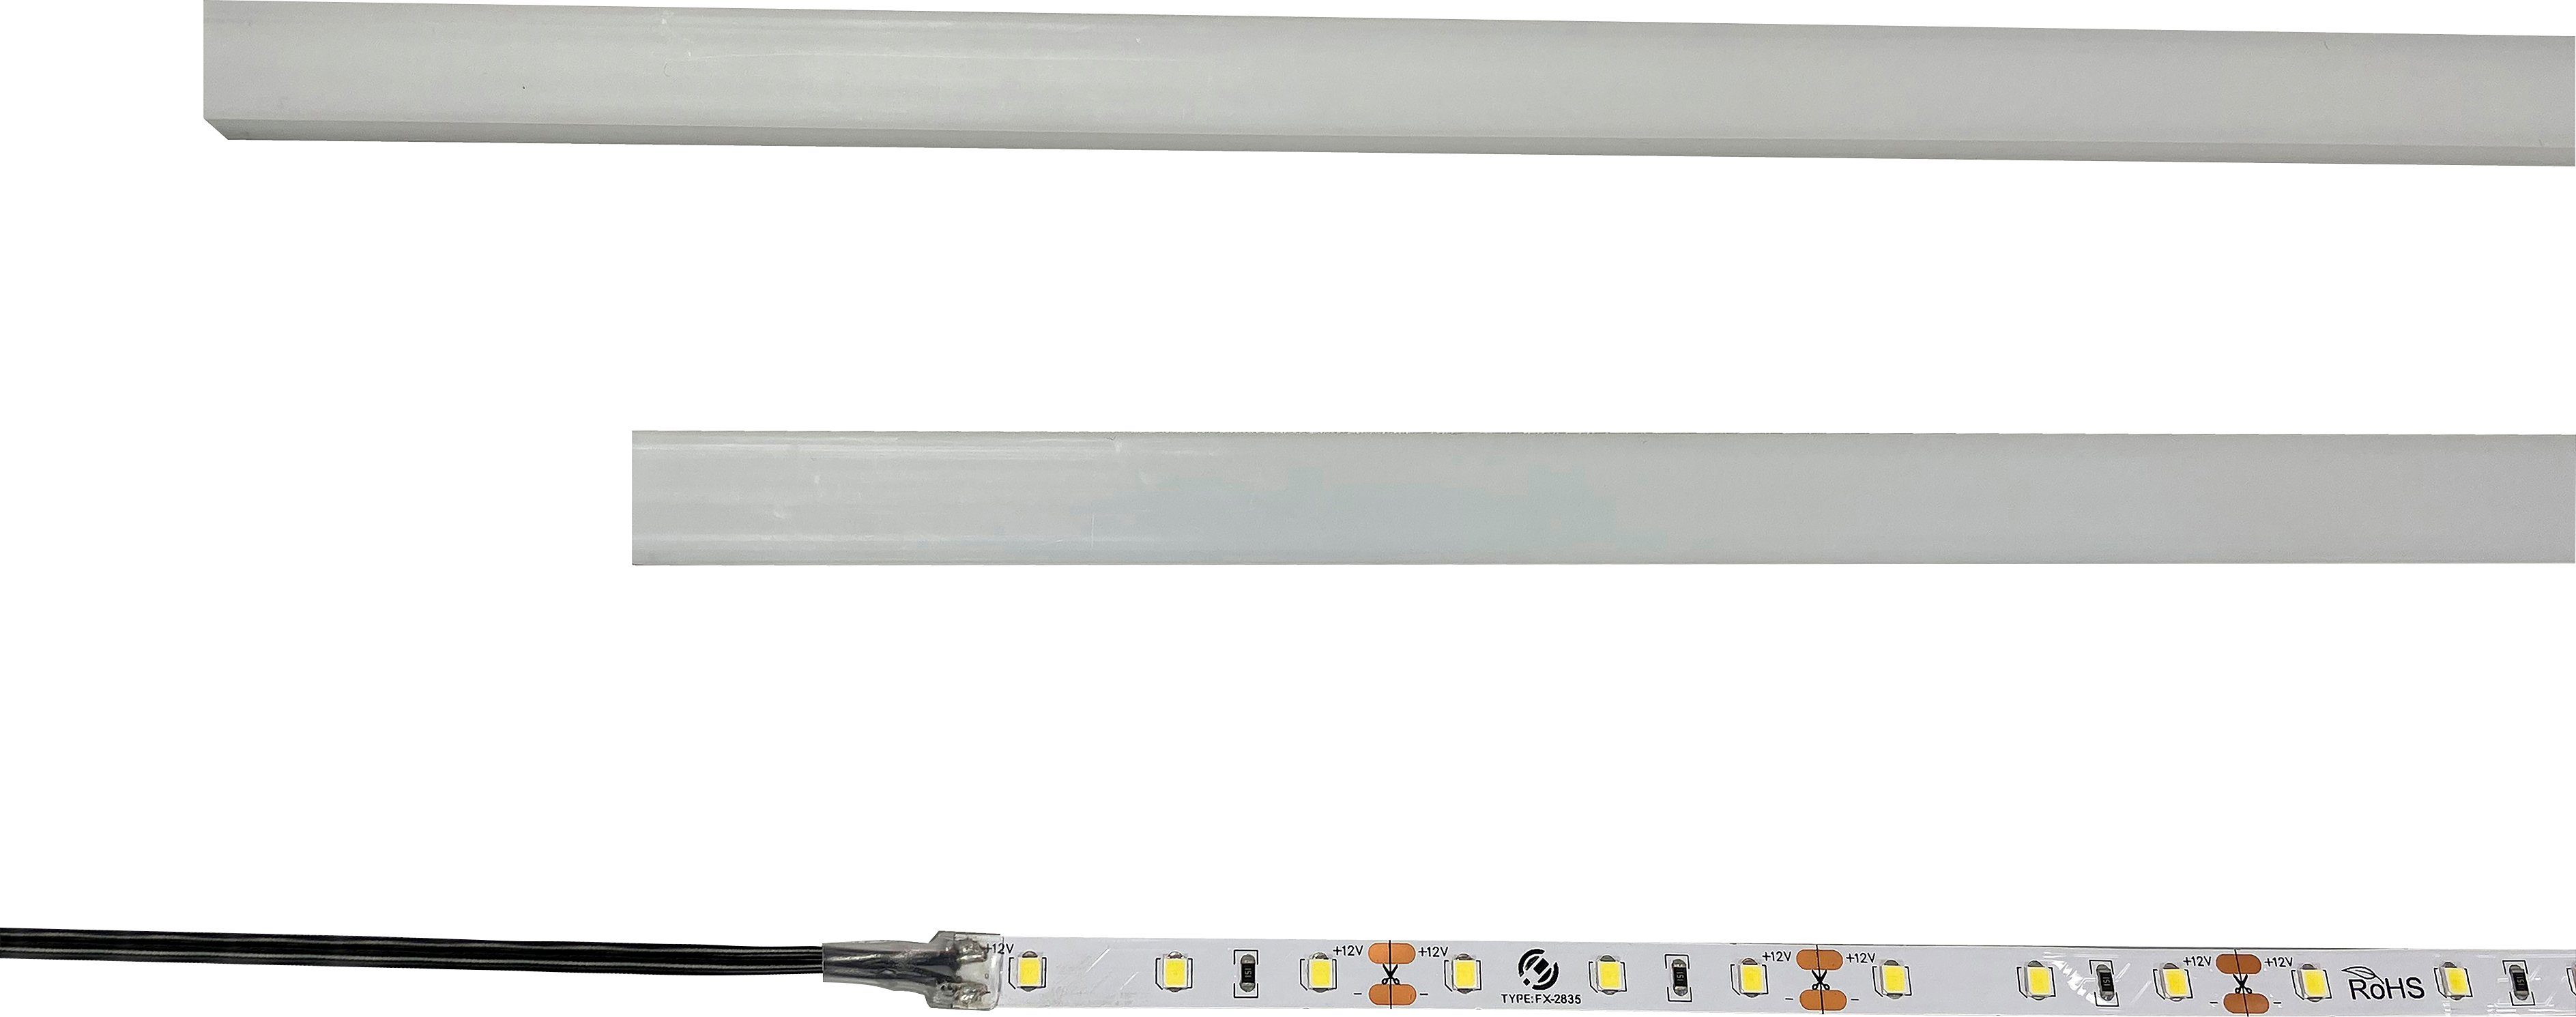 LED-Einbauprofile fest integriert, Unterbauleuchte Skoskap LED INOSIGN universal, LED Kaltweiß, für Ein-/Ausschalter, Modell optinonal